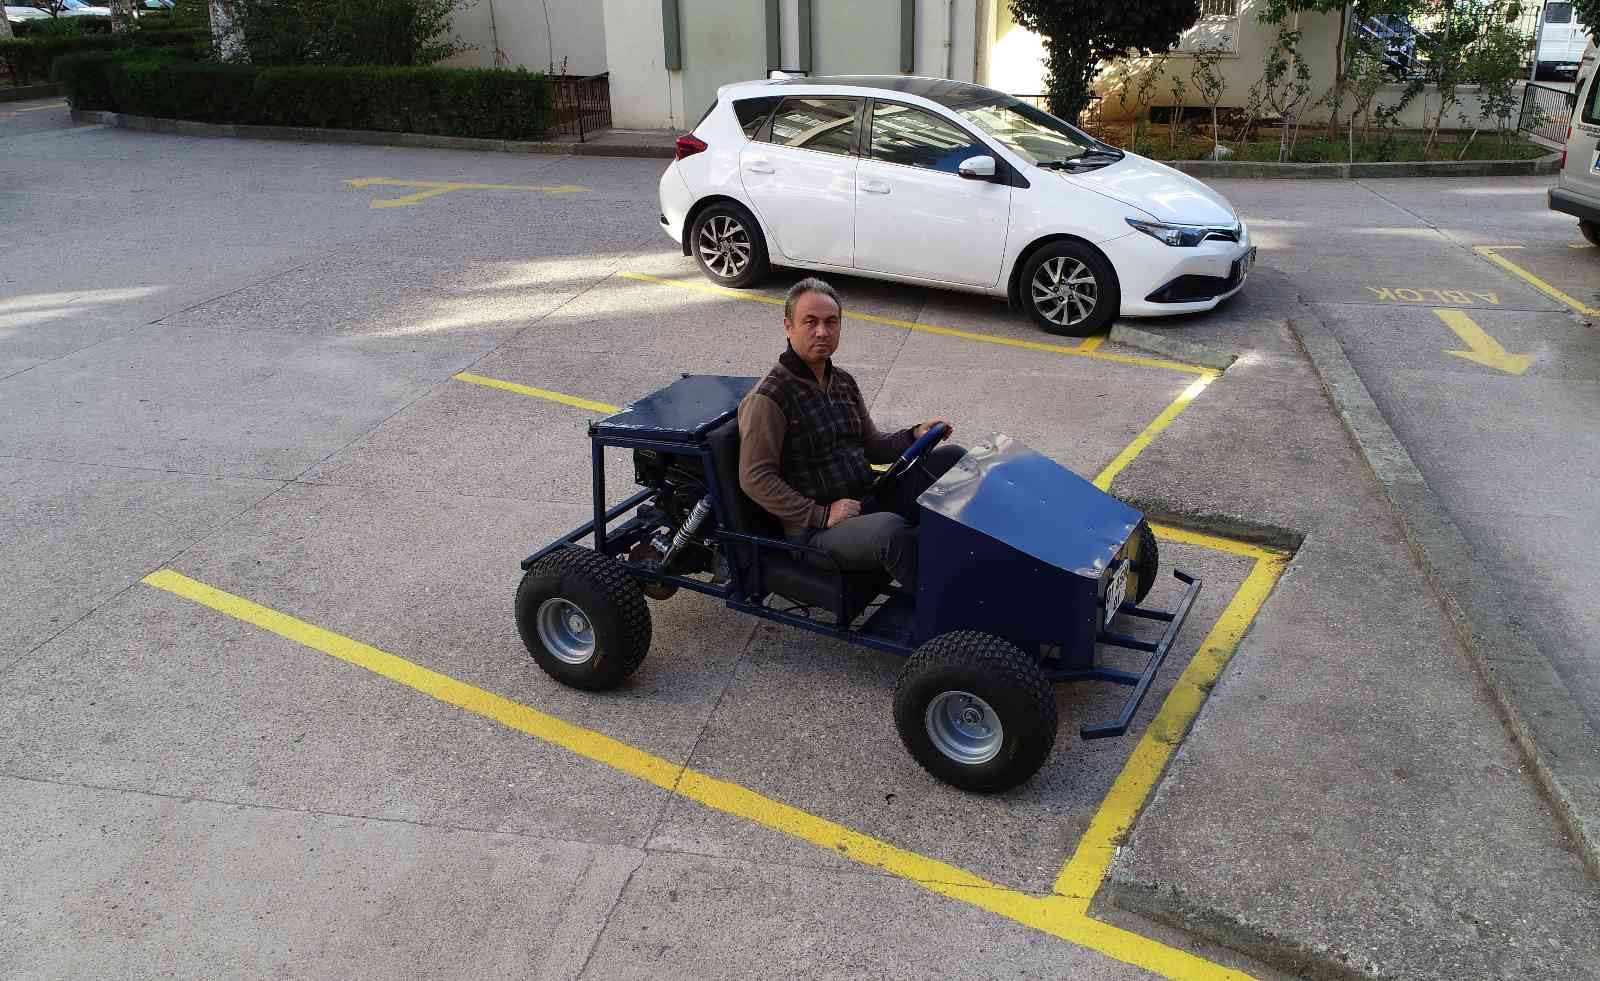 Apartman görevlisi pandemide ‘Go kart’ arabası yaptı #adana